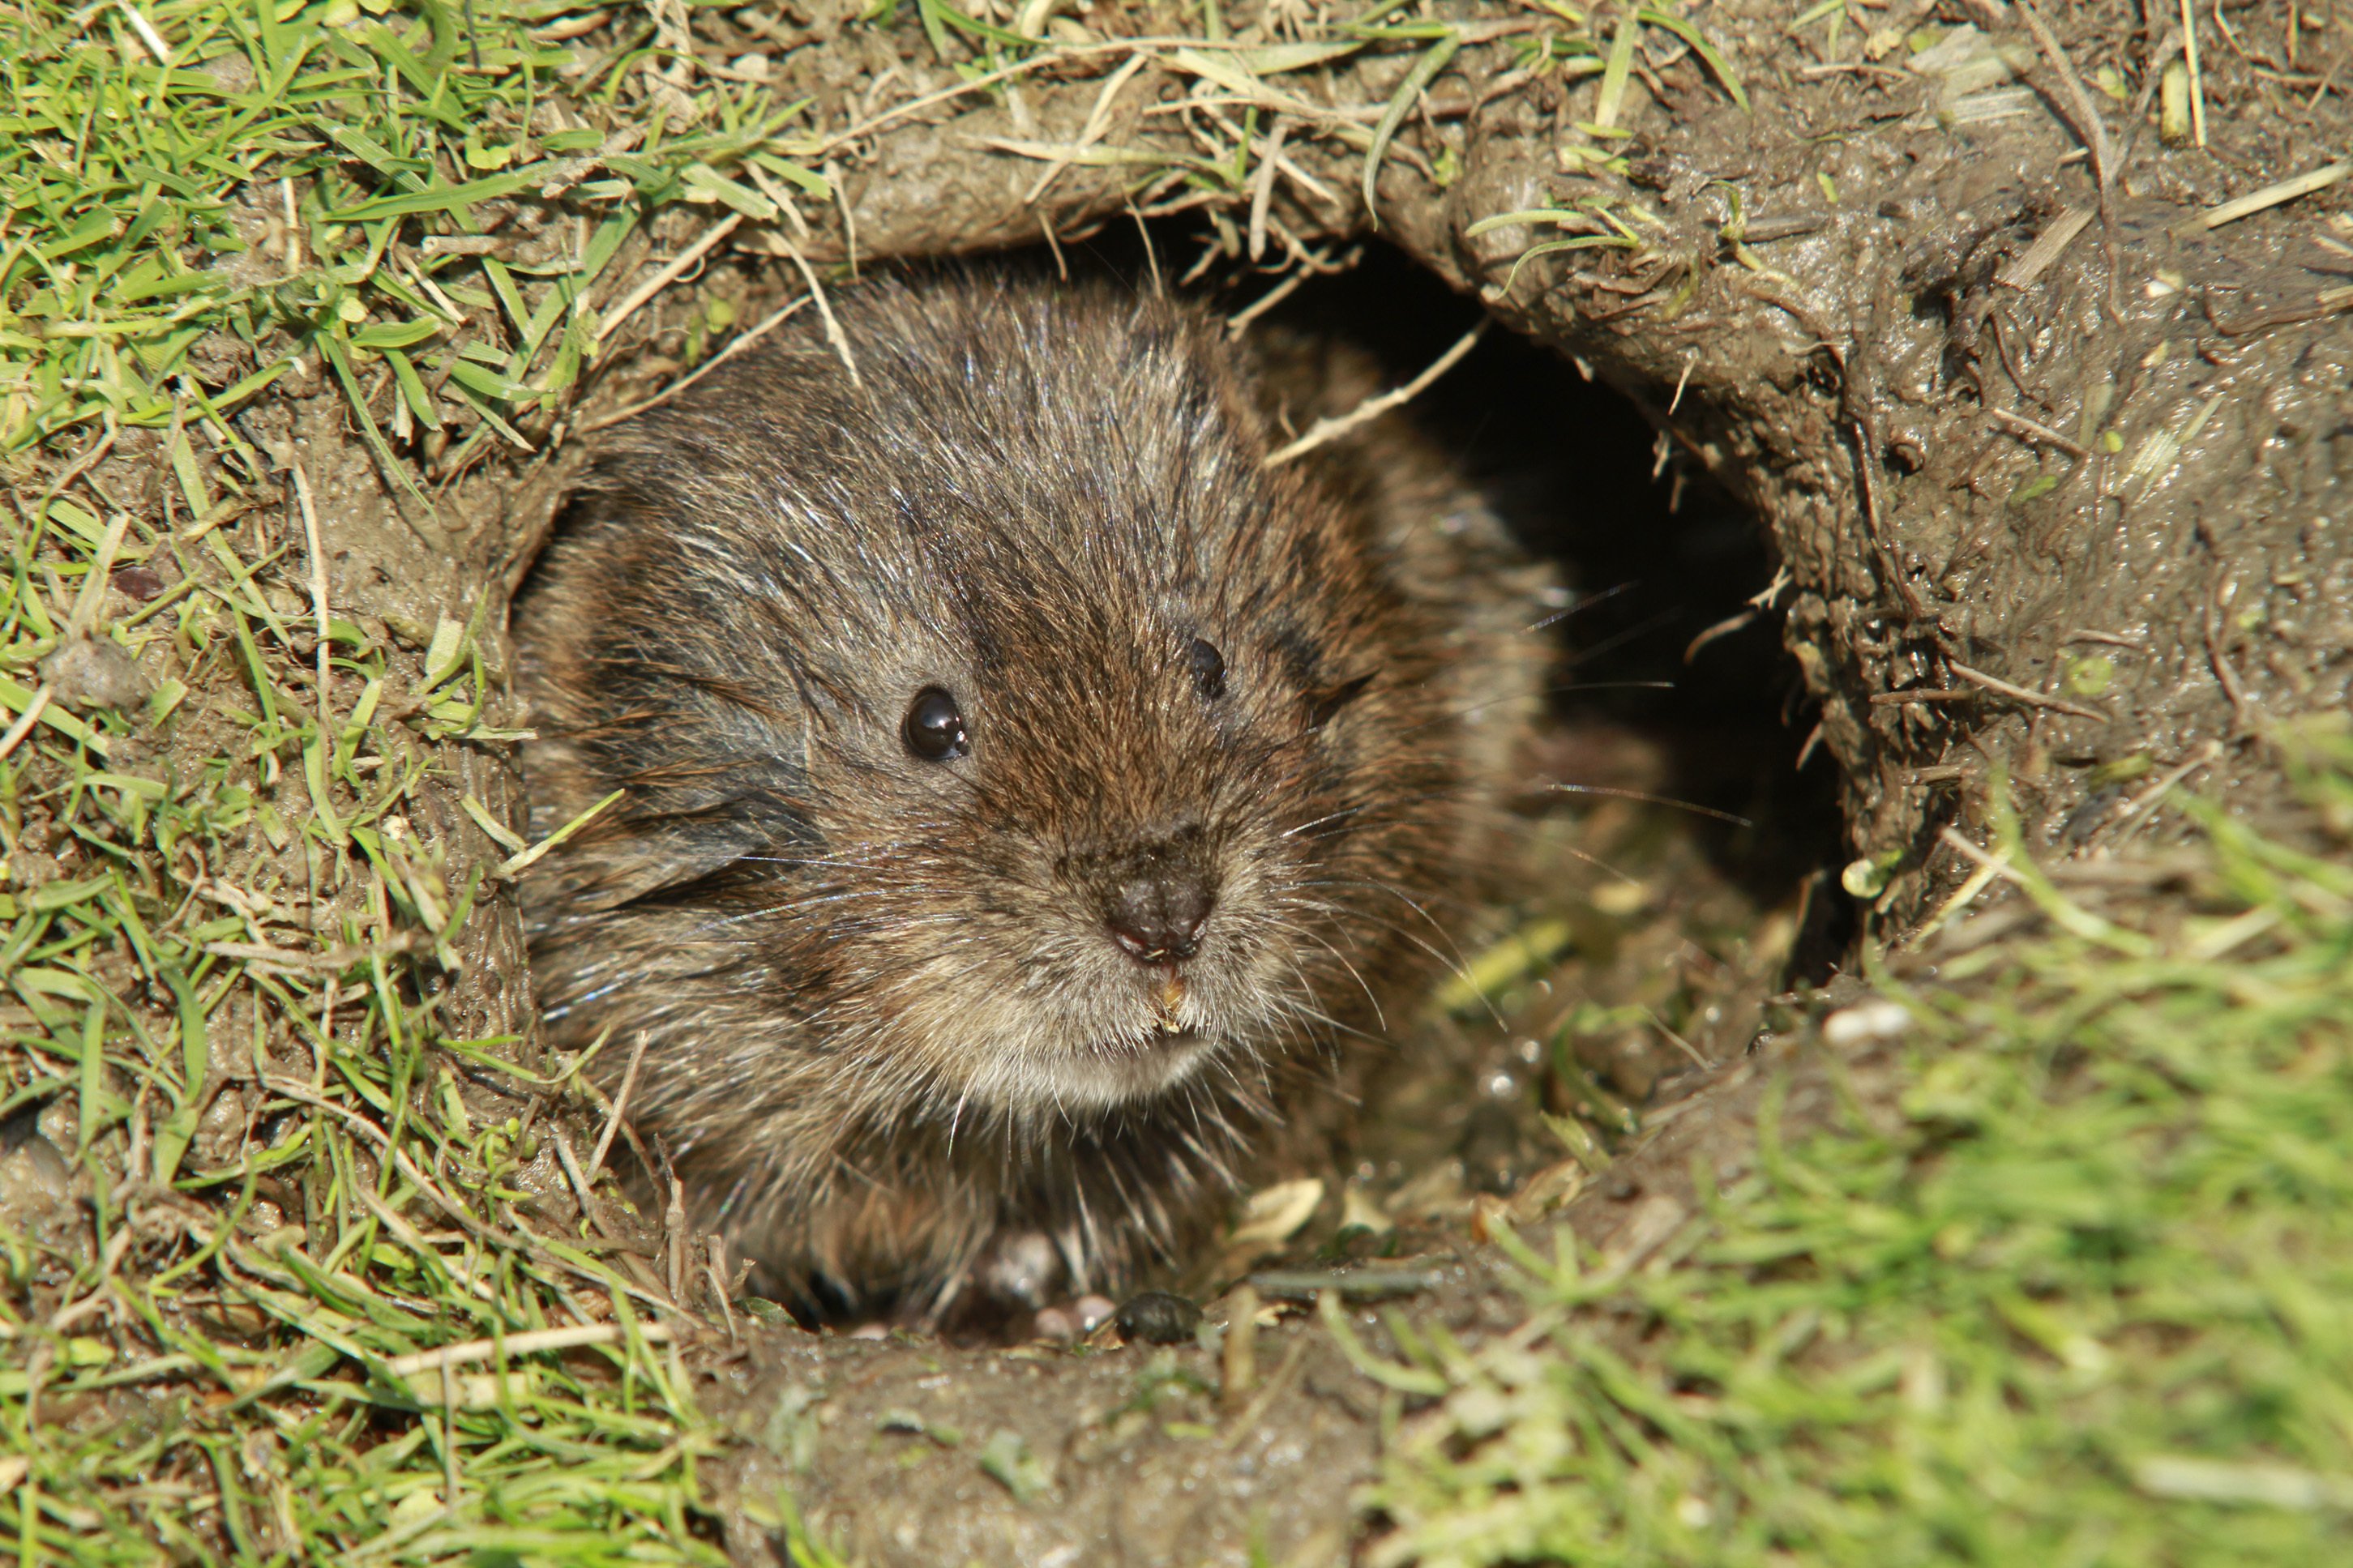 Как избавиться от земляной крысы в огороде: методы борьбы